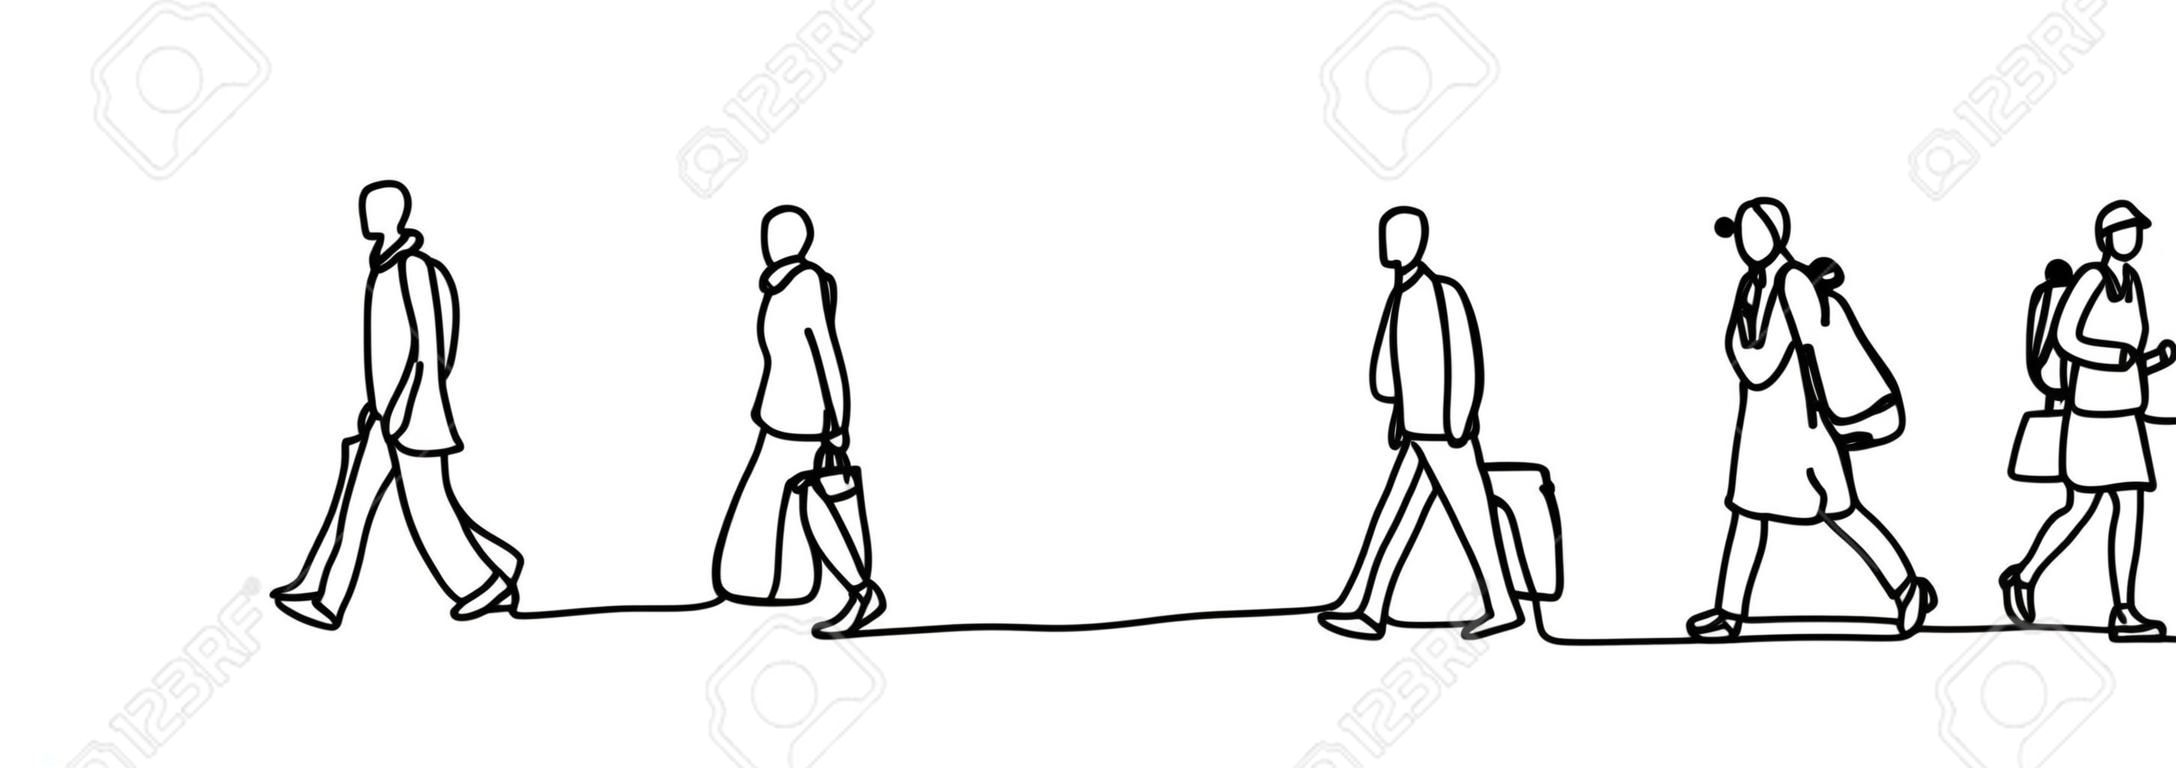 Les navetteurs urbains un dessin au trait continu minimalisme design croquis dessinés à la main illustration vectorielle. Personnes marchant avant ou après le travail.